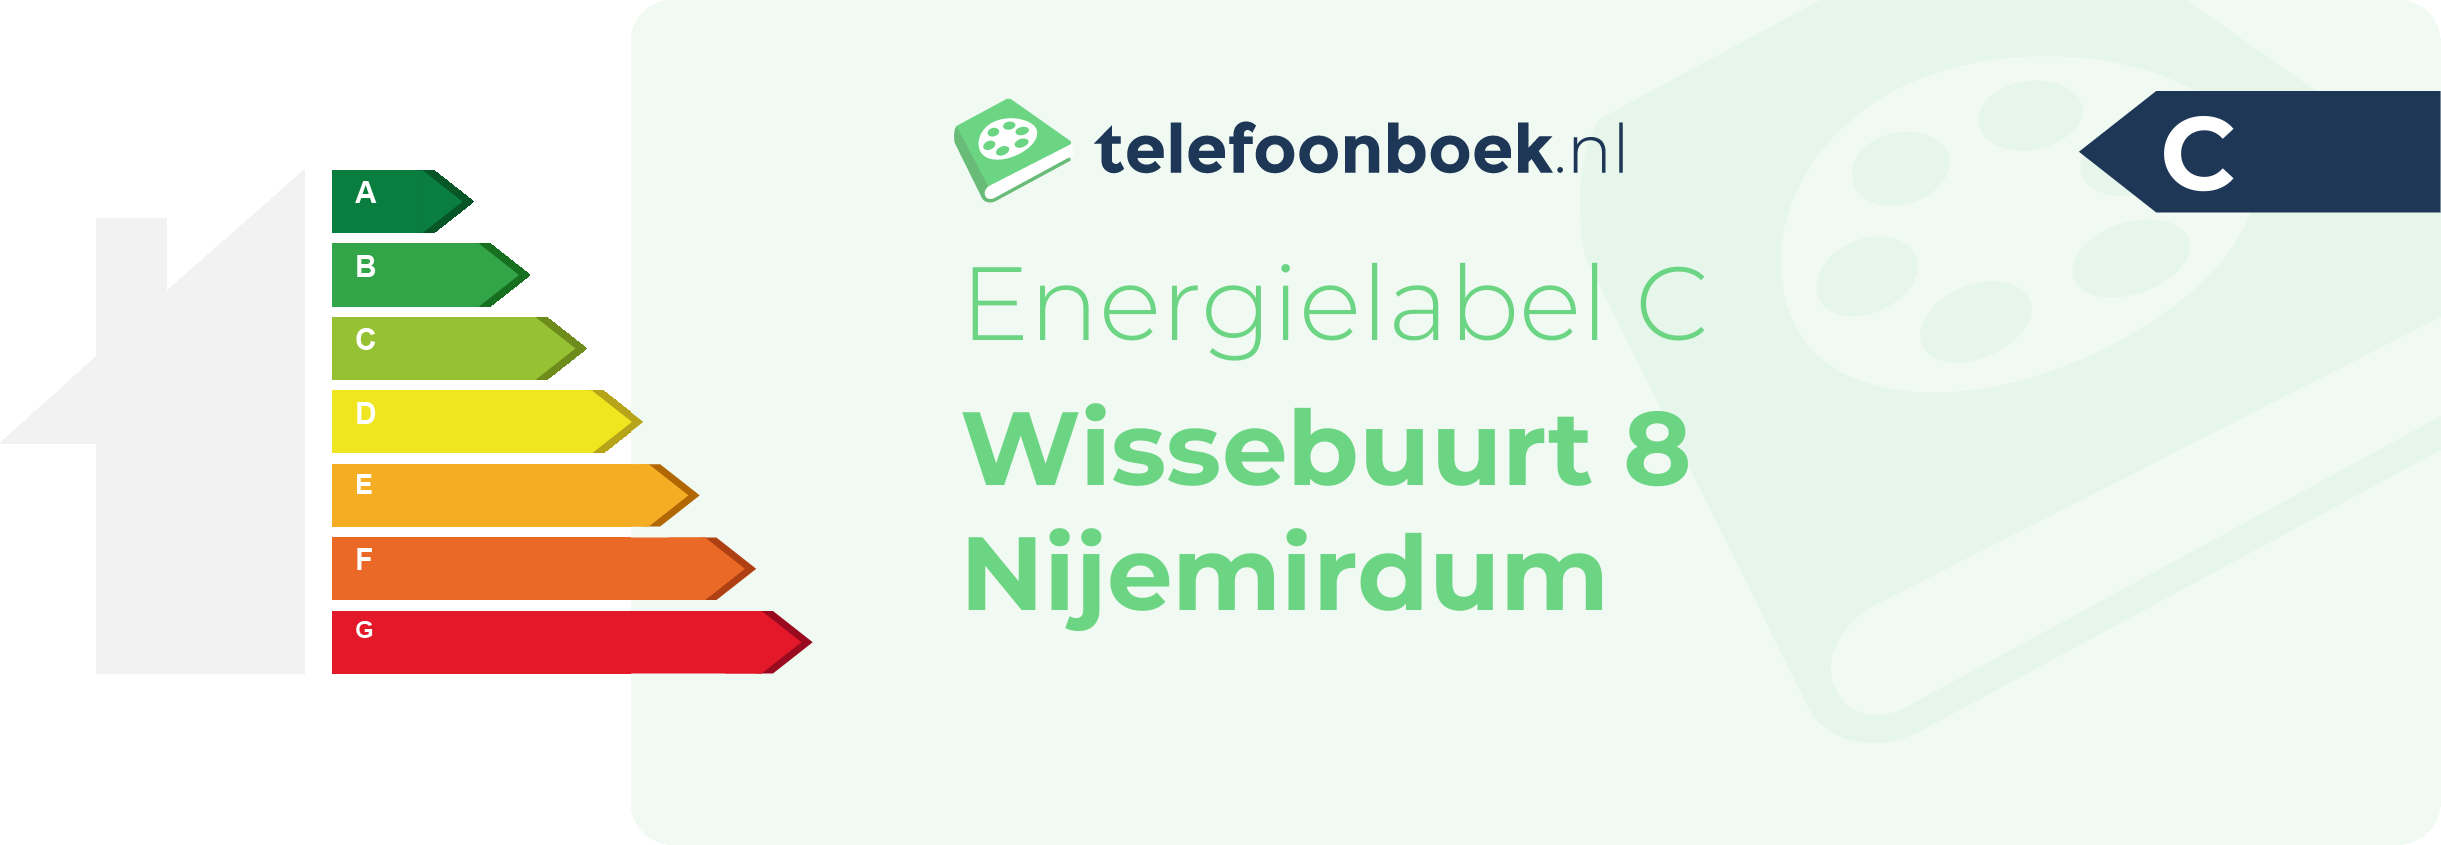 Energielabel Wissebuurt 8 Nijemirdum